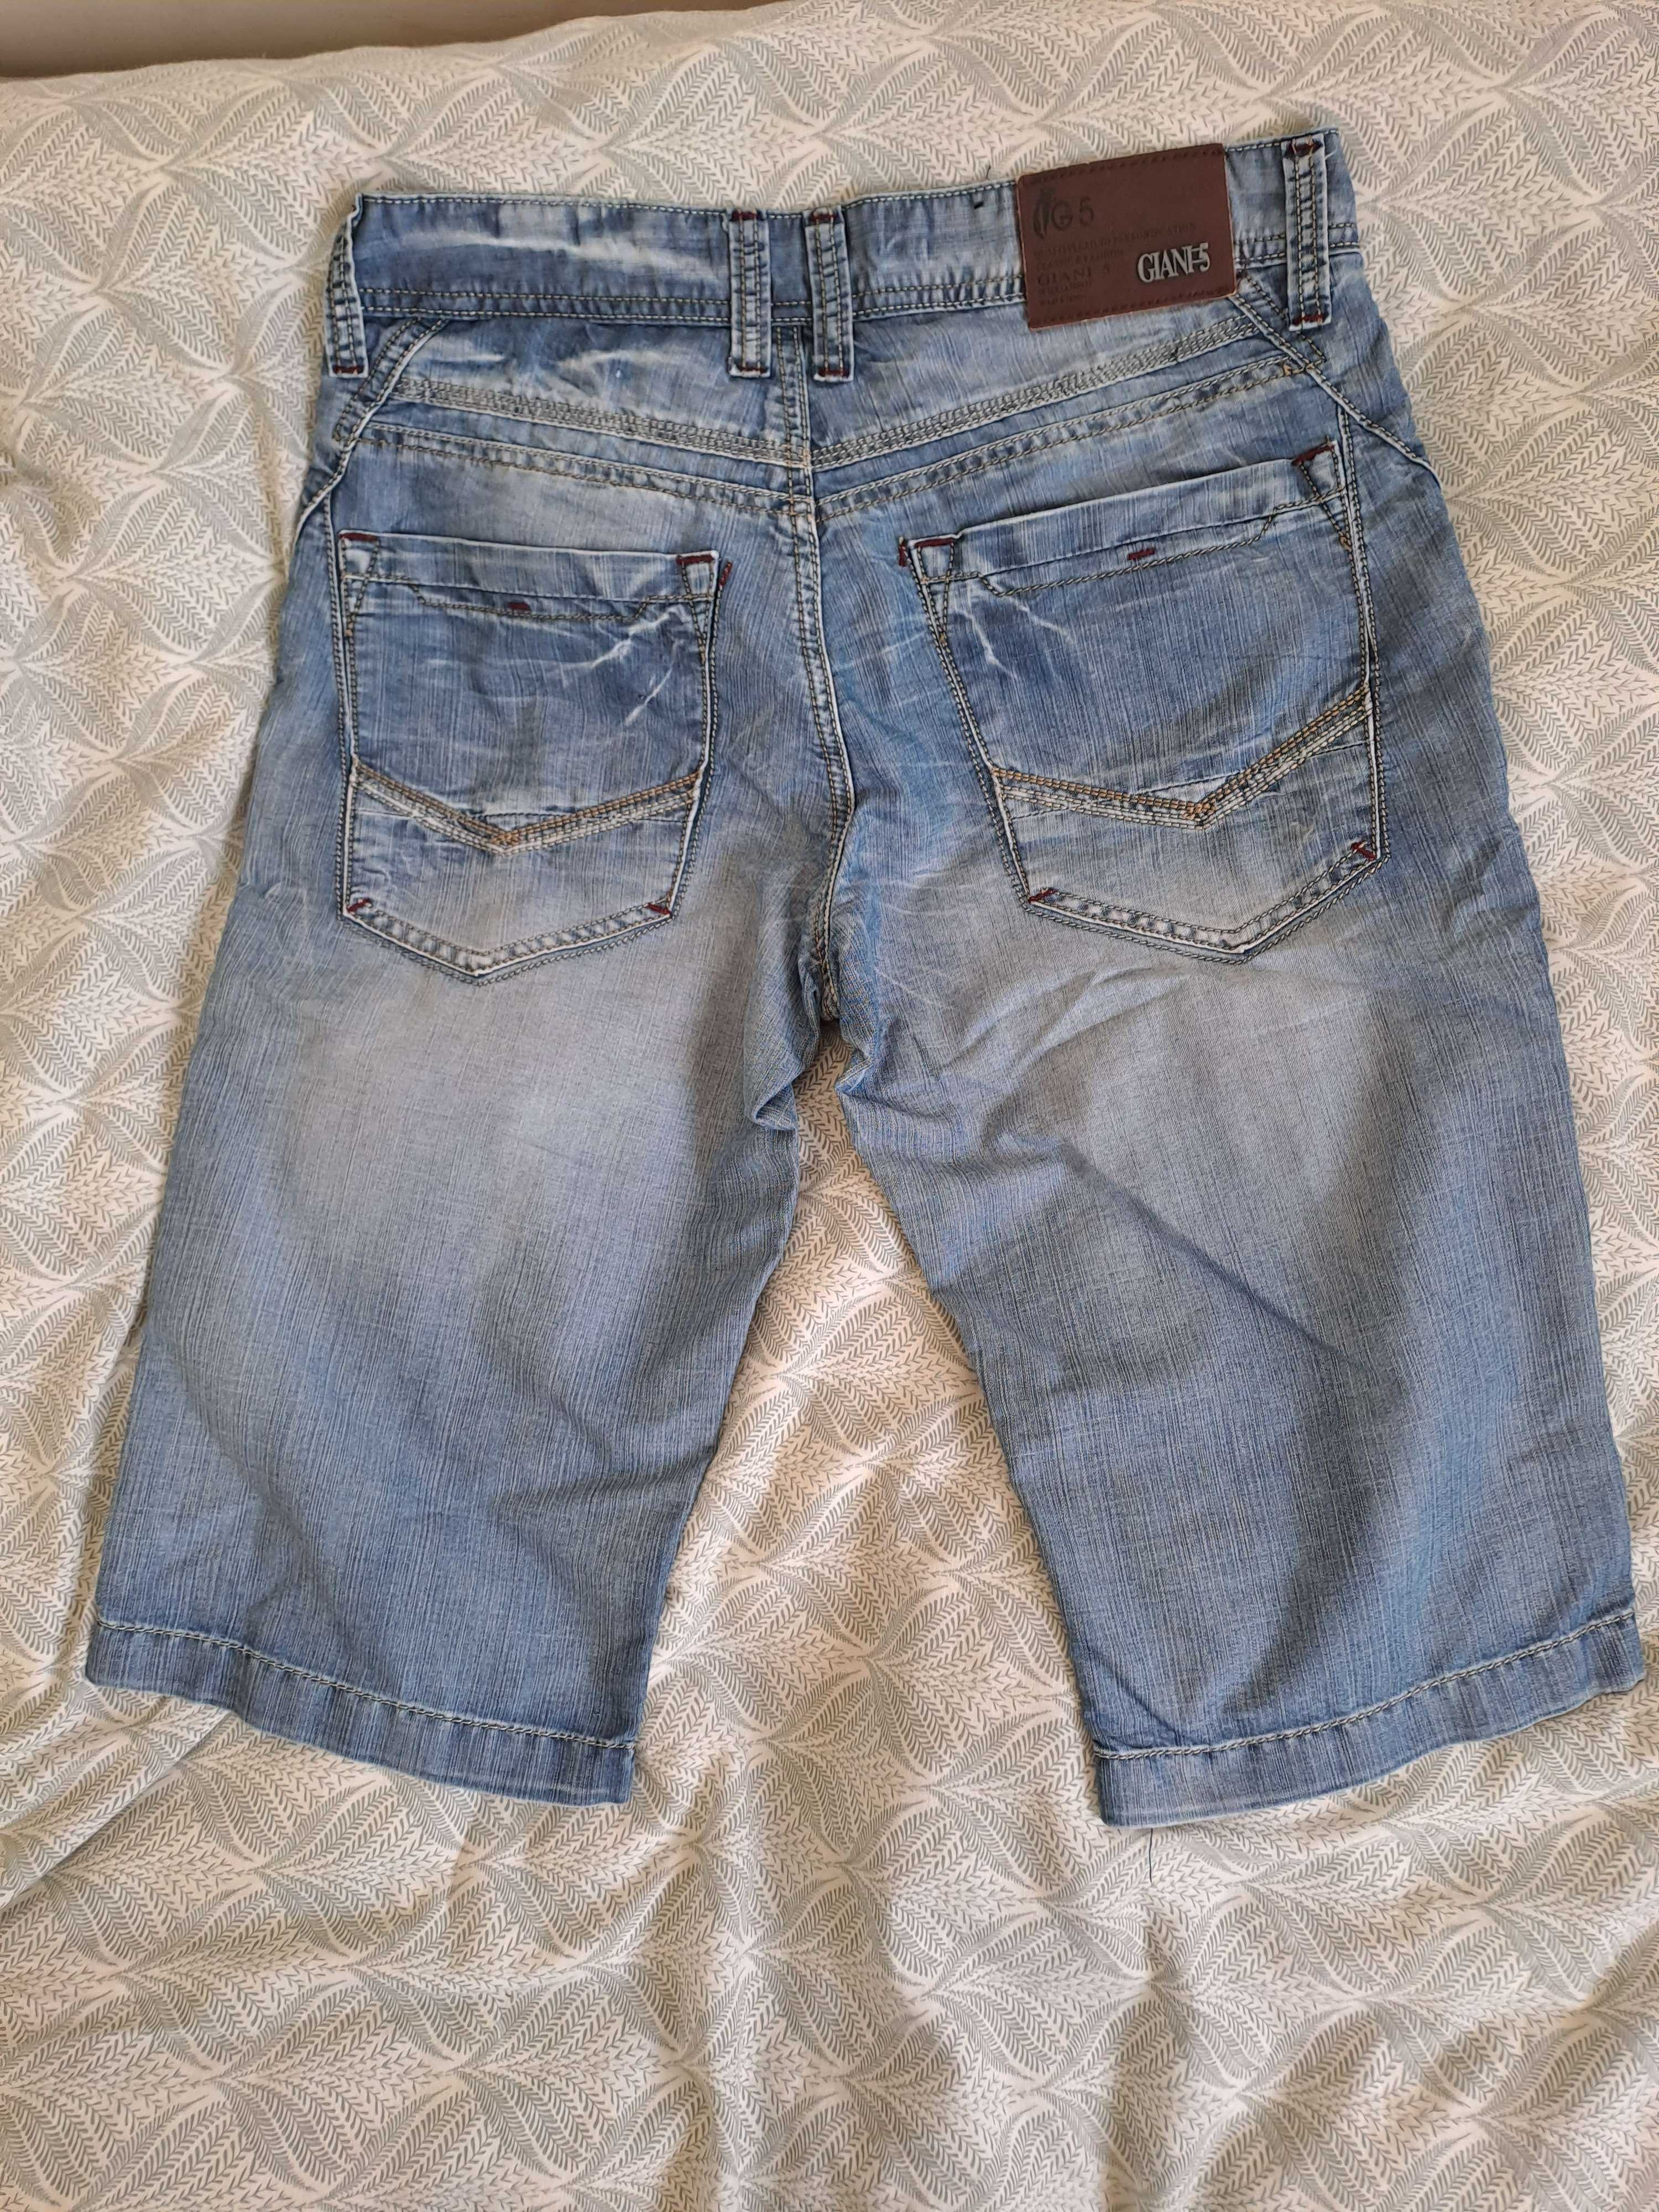 Szorty jeansowe męskie Giani 5 R. 30